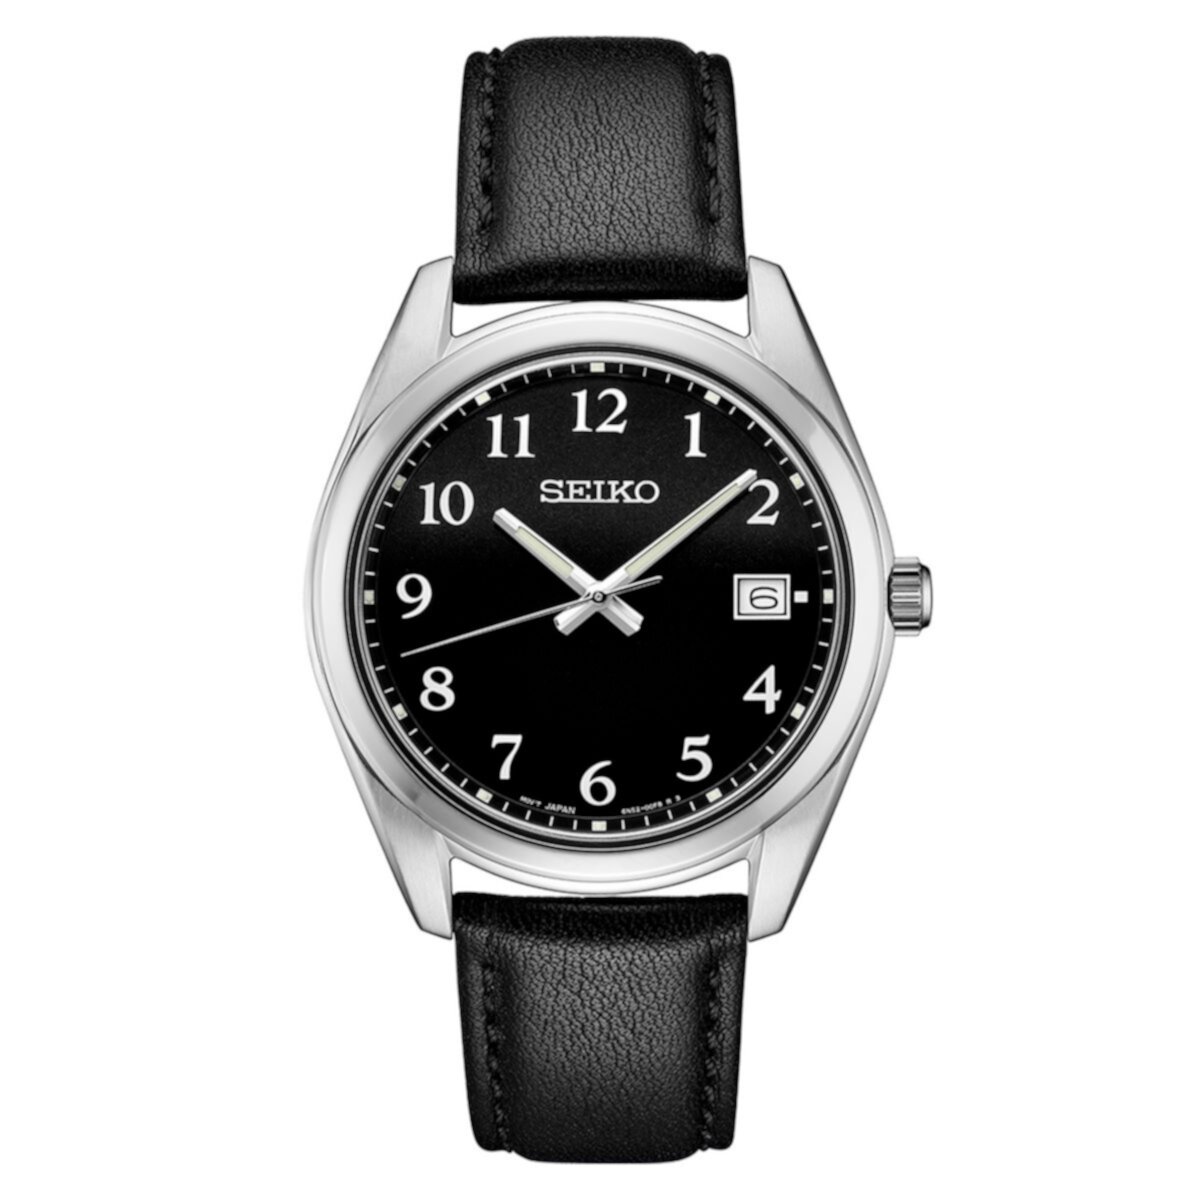 Мужские часы Seiko Essential из нержавеющей стали с черным циферблатом — SUR461 Seiko